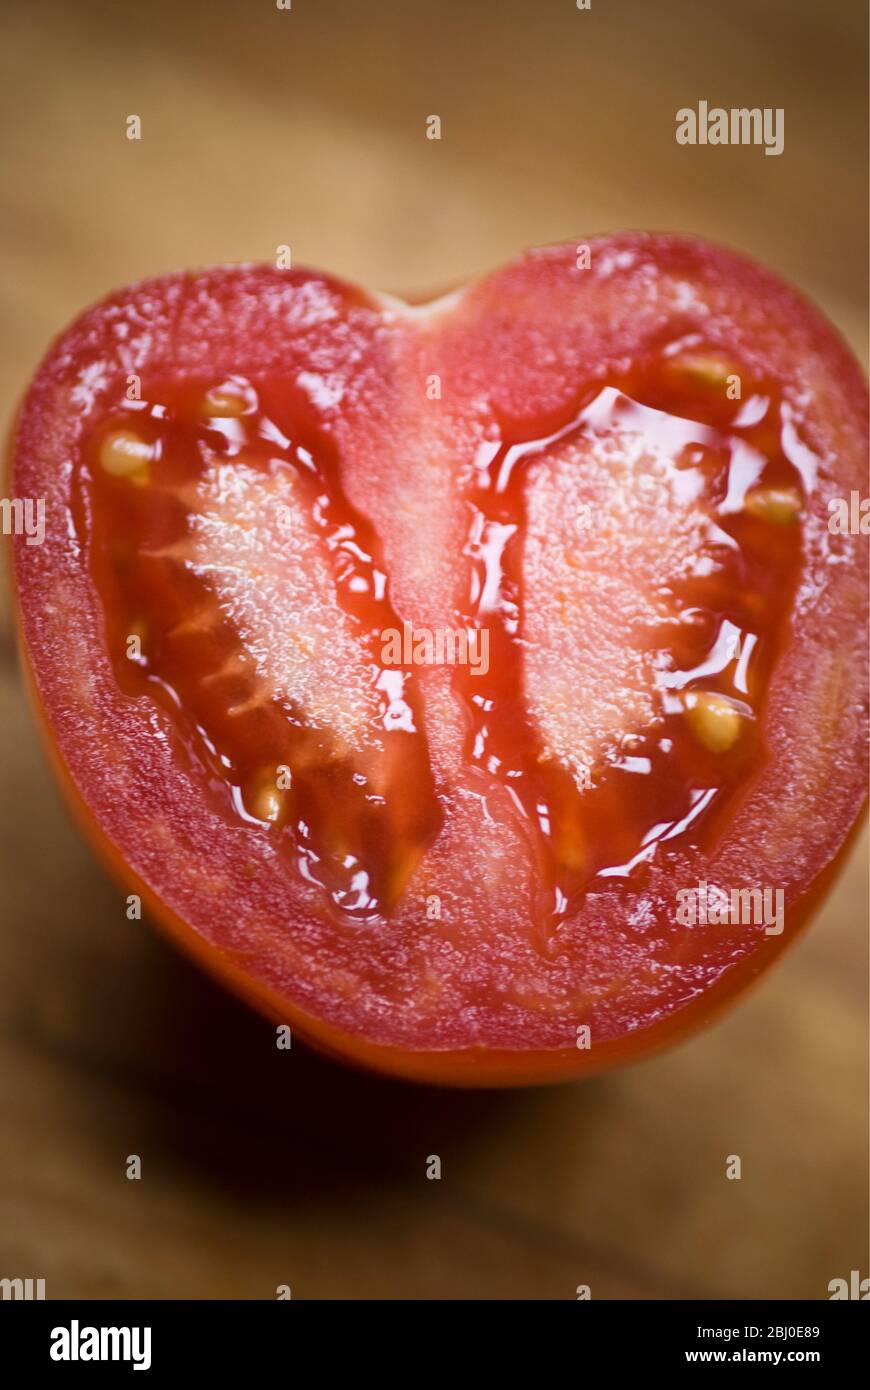 Tomate rouge avec une seule moitié de réduction - Banque D'Images